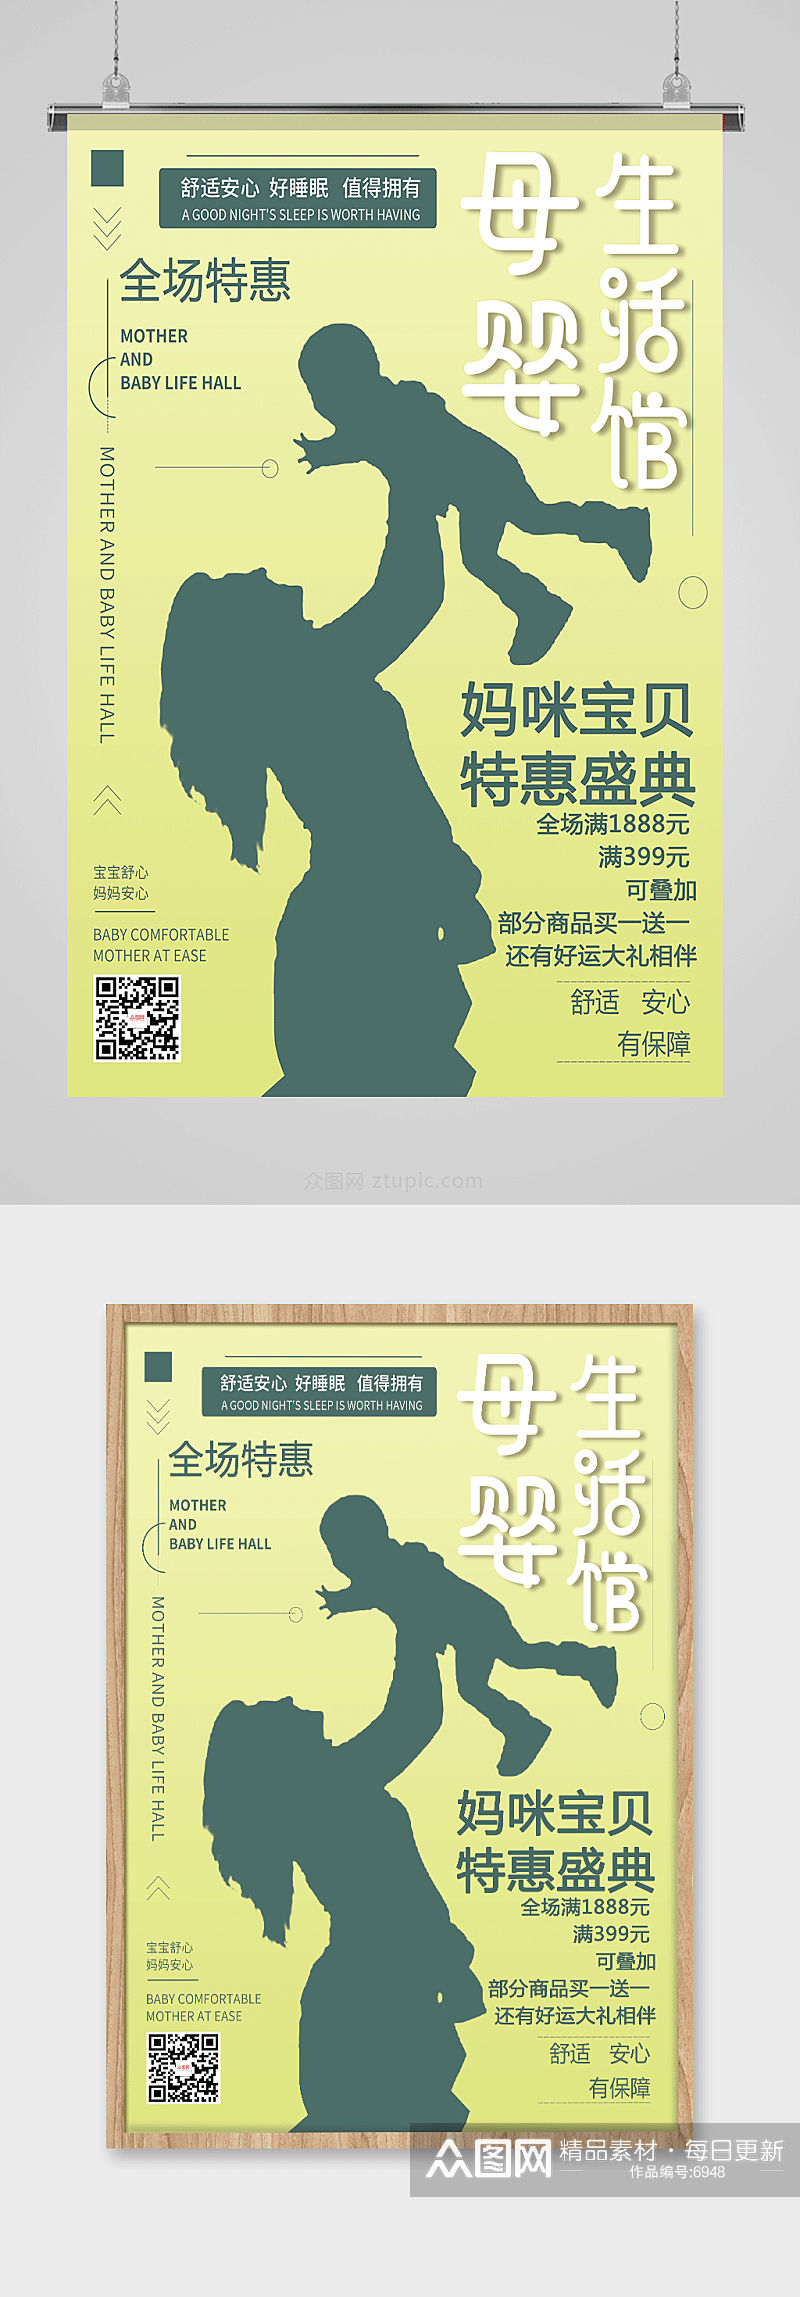 绿色清新简约风母婴生活馆母婴用品促销海报设计素材